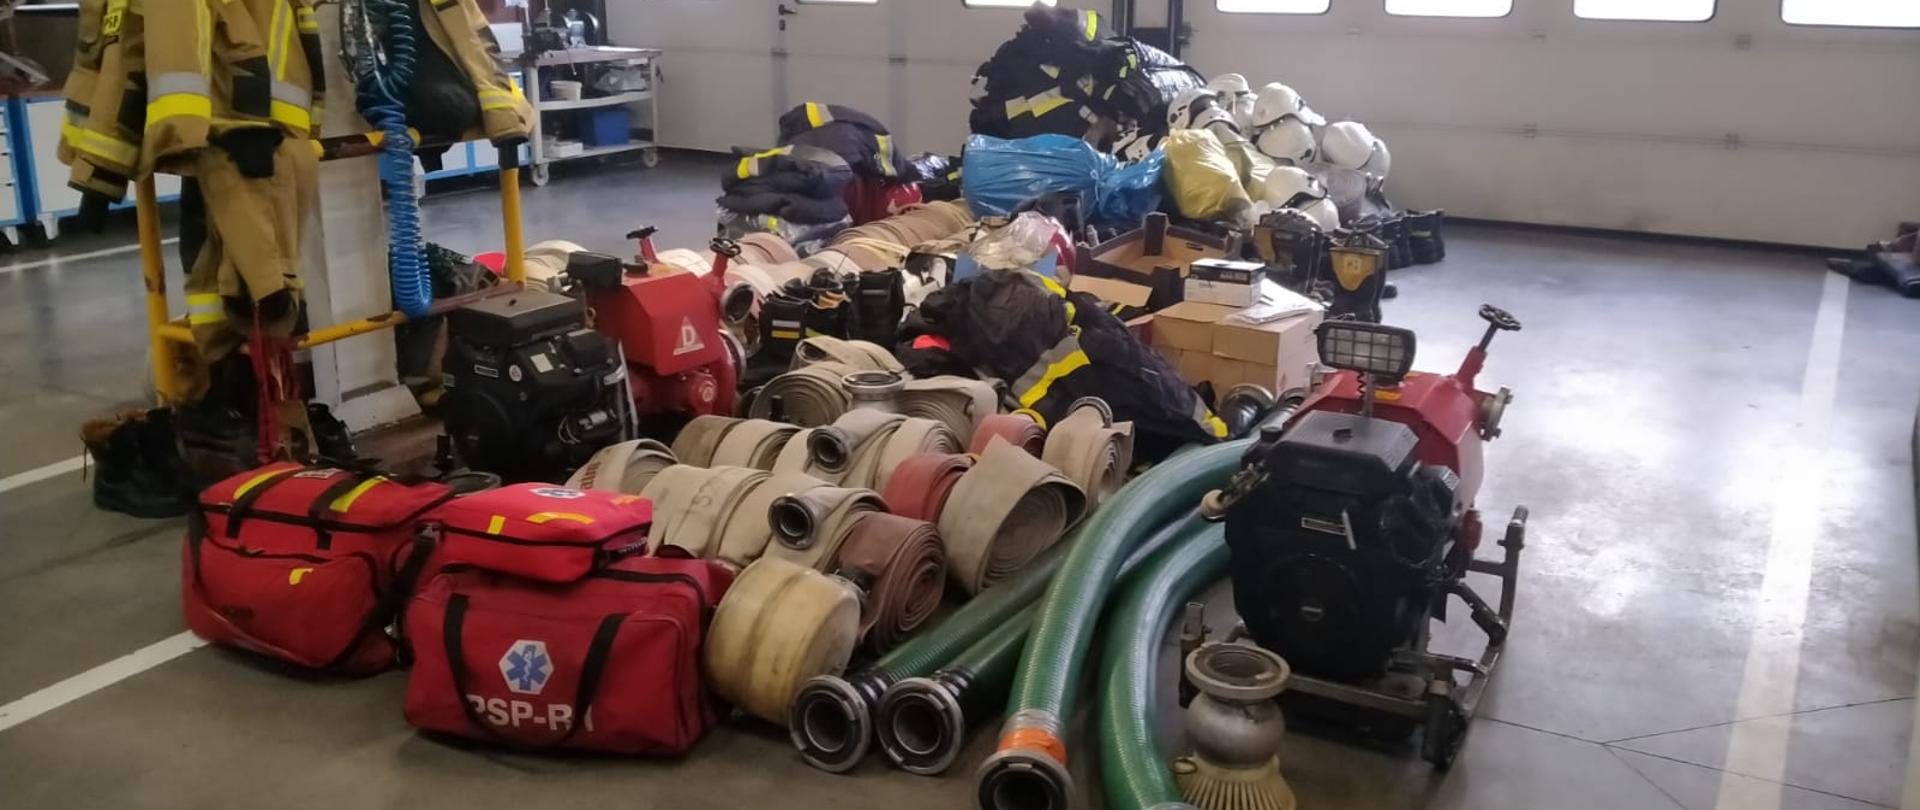 na zdjęciu widać zebrany w garażu sprzęt pożarniczy, motopompy, węże pożarnicze, torby medyczne, mundury hełmy itp.